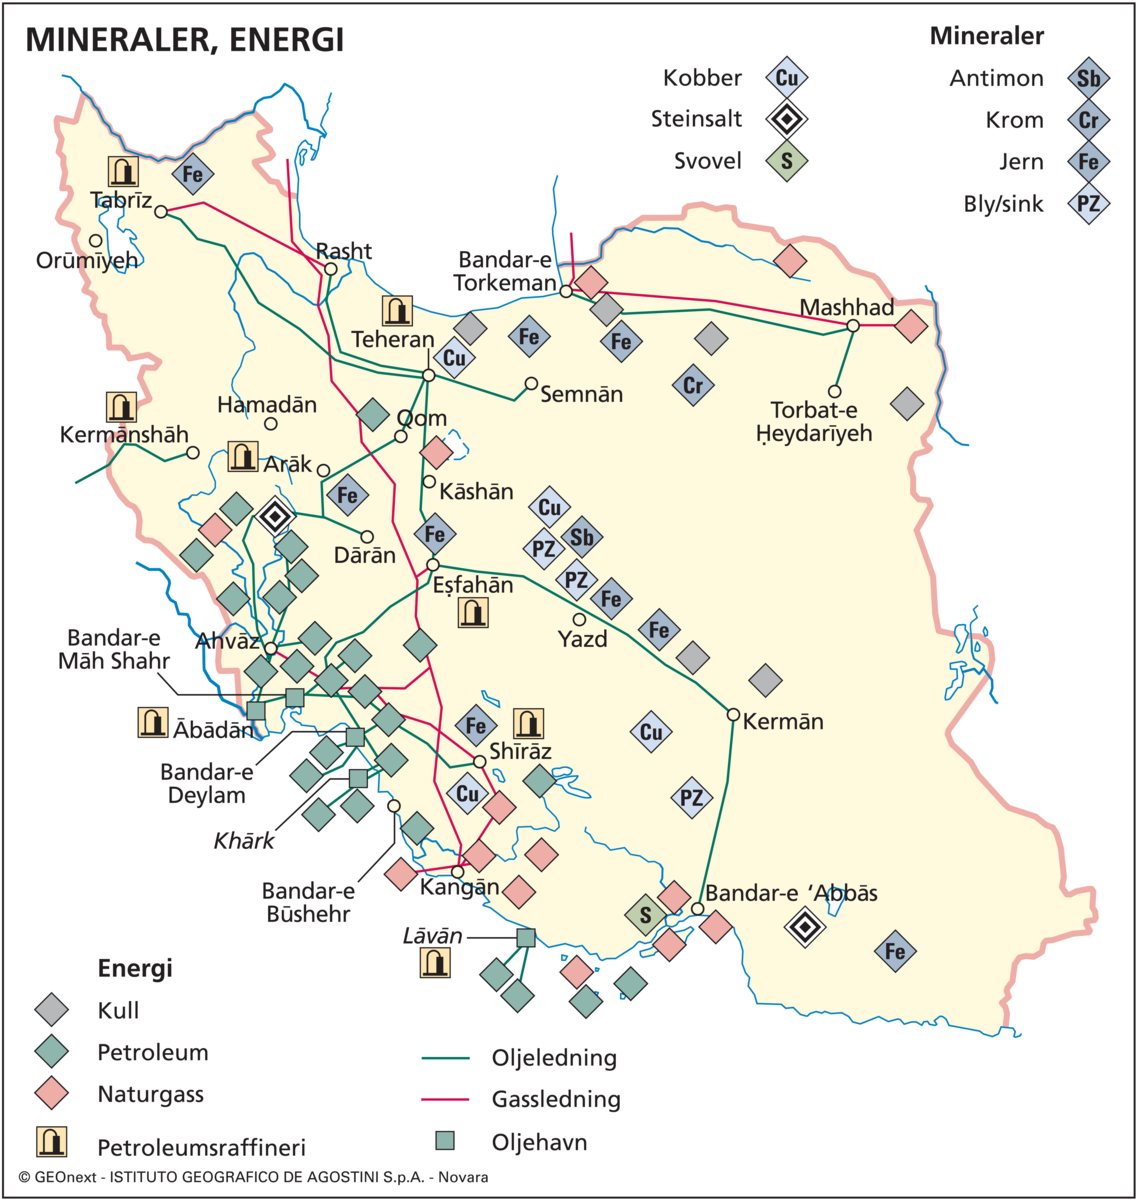 Iran (økon. kart, mineraler og energi)